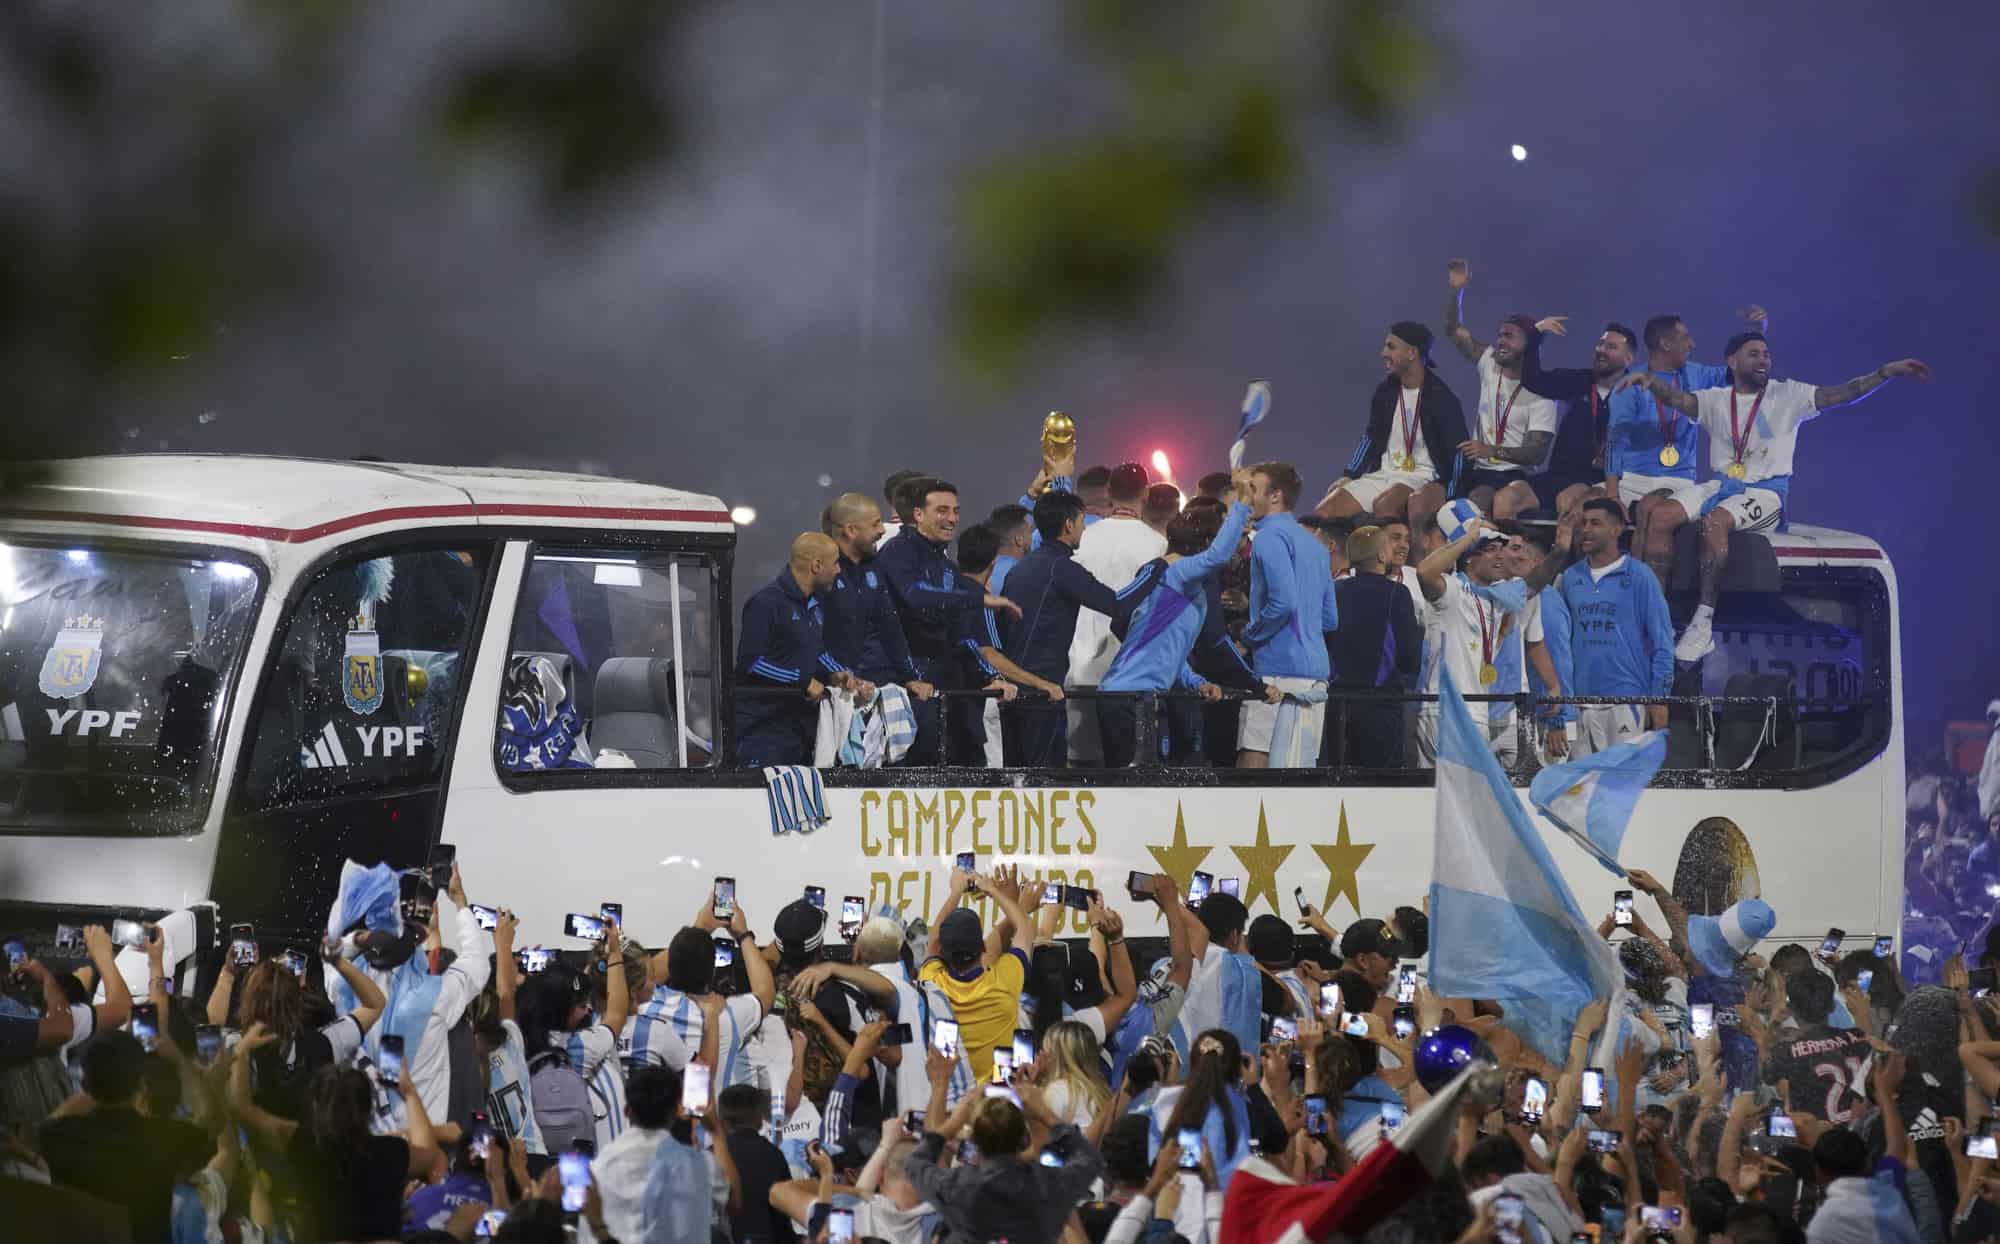 Los jugadores de la selección argentina de fútbol que ganó la Copa del Mundo llegan al campo de entrenamiento donde pasarón la noche después de aterrizar en el aeropuerto de Ezeiza, en las afueras de Buenos Aires, Argentina, el martes 2 de diciembre de 2019. 20 de febrero de 2022.